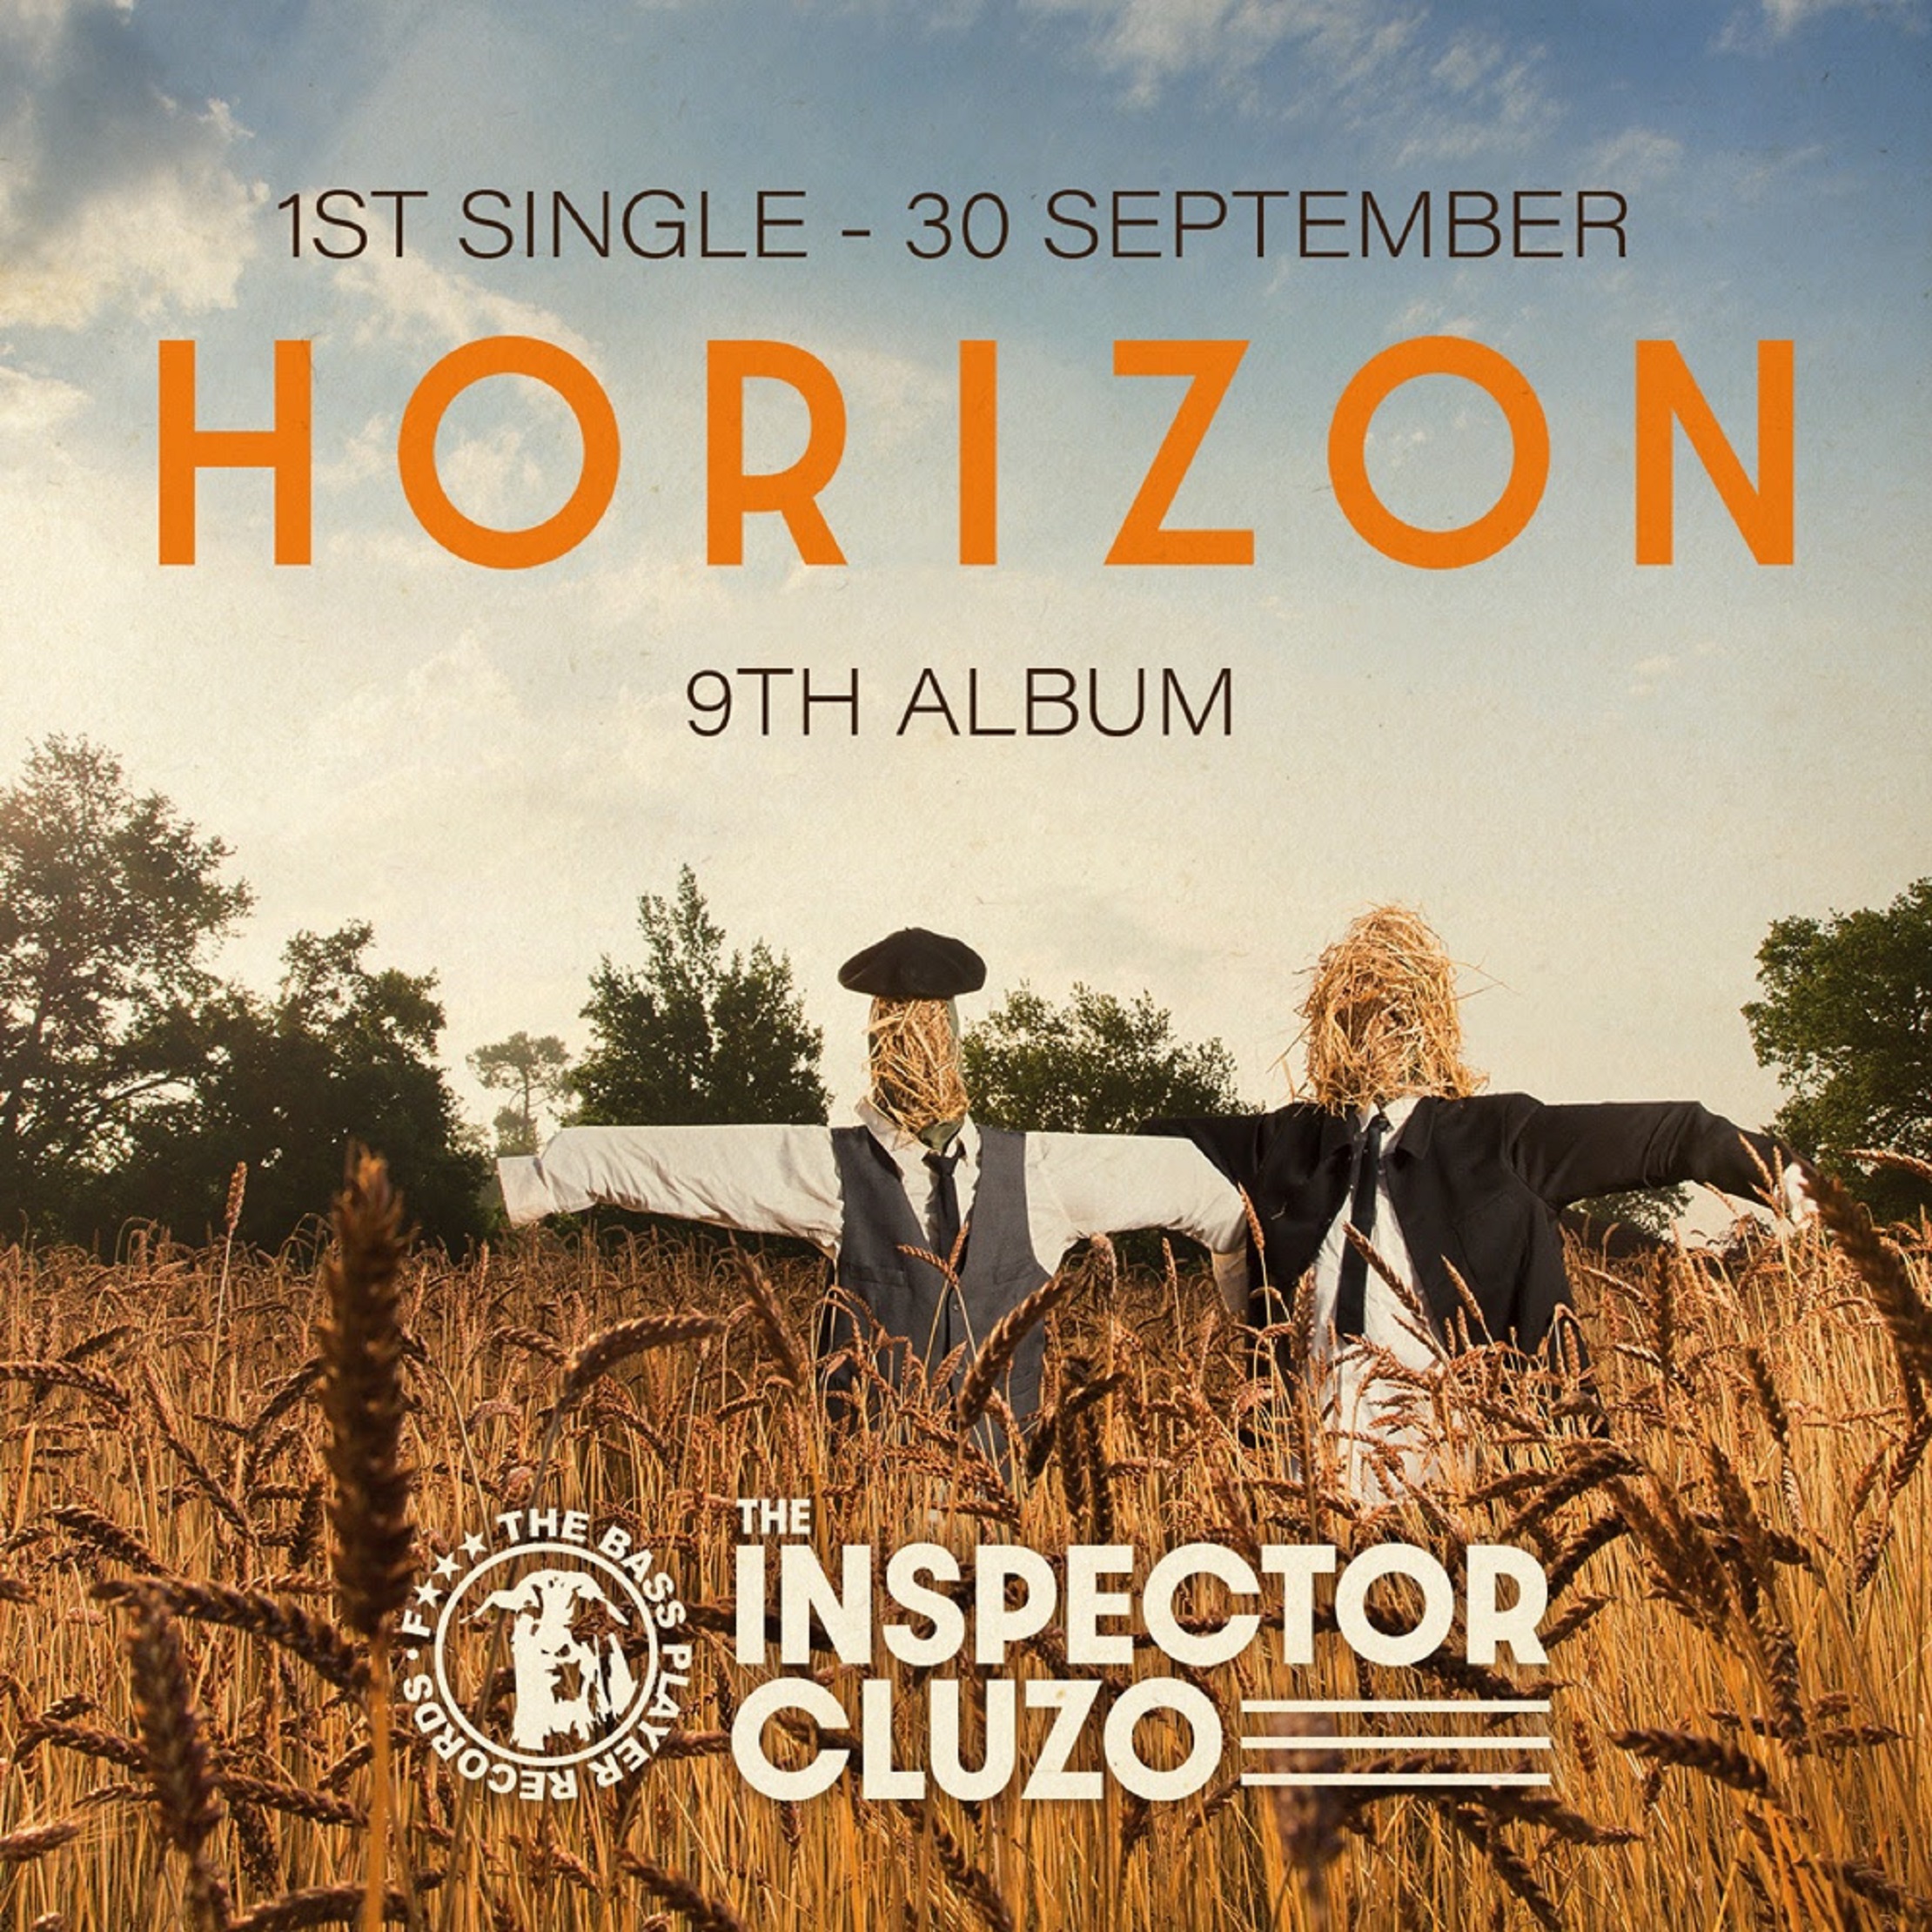 THE INSPECTOR CLUZO ANNOUNCE NEW ALBUM: HORIZON